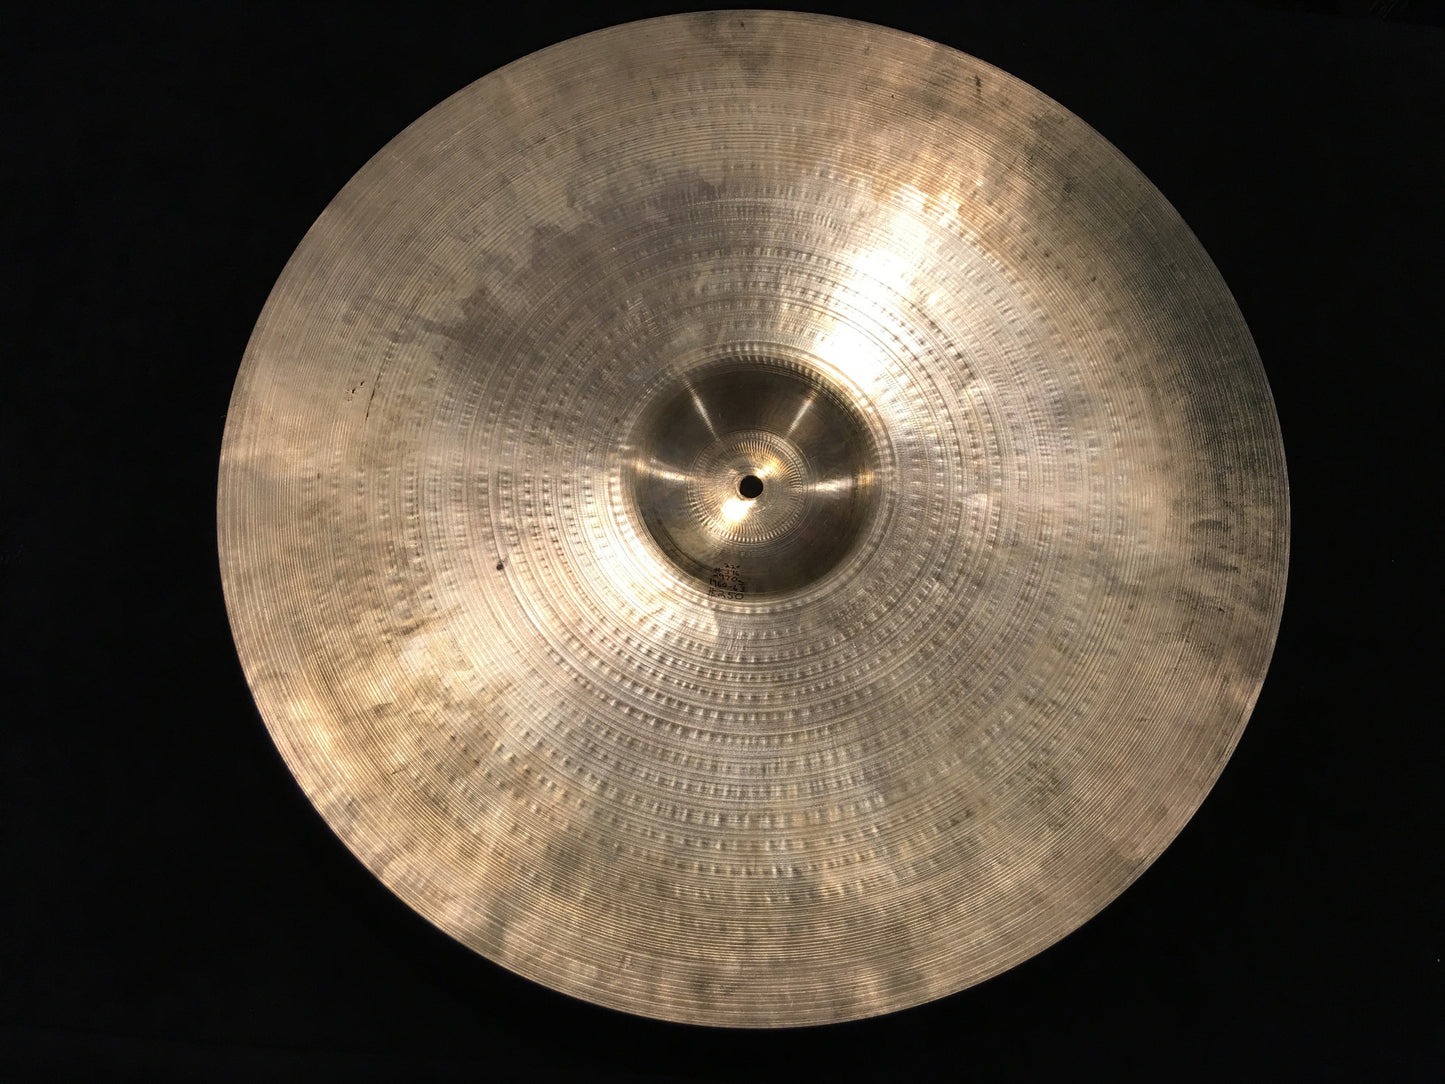 22" Zildjian A 1960's Ride Cymbal 2970g #396